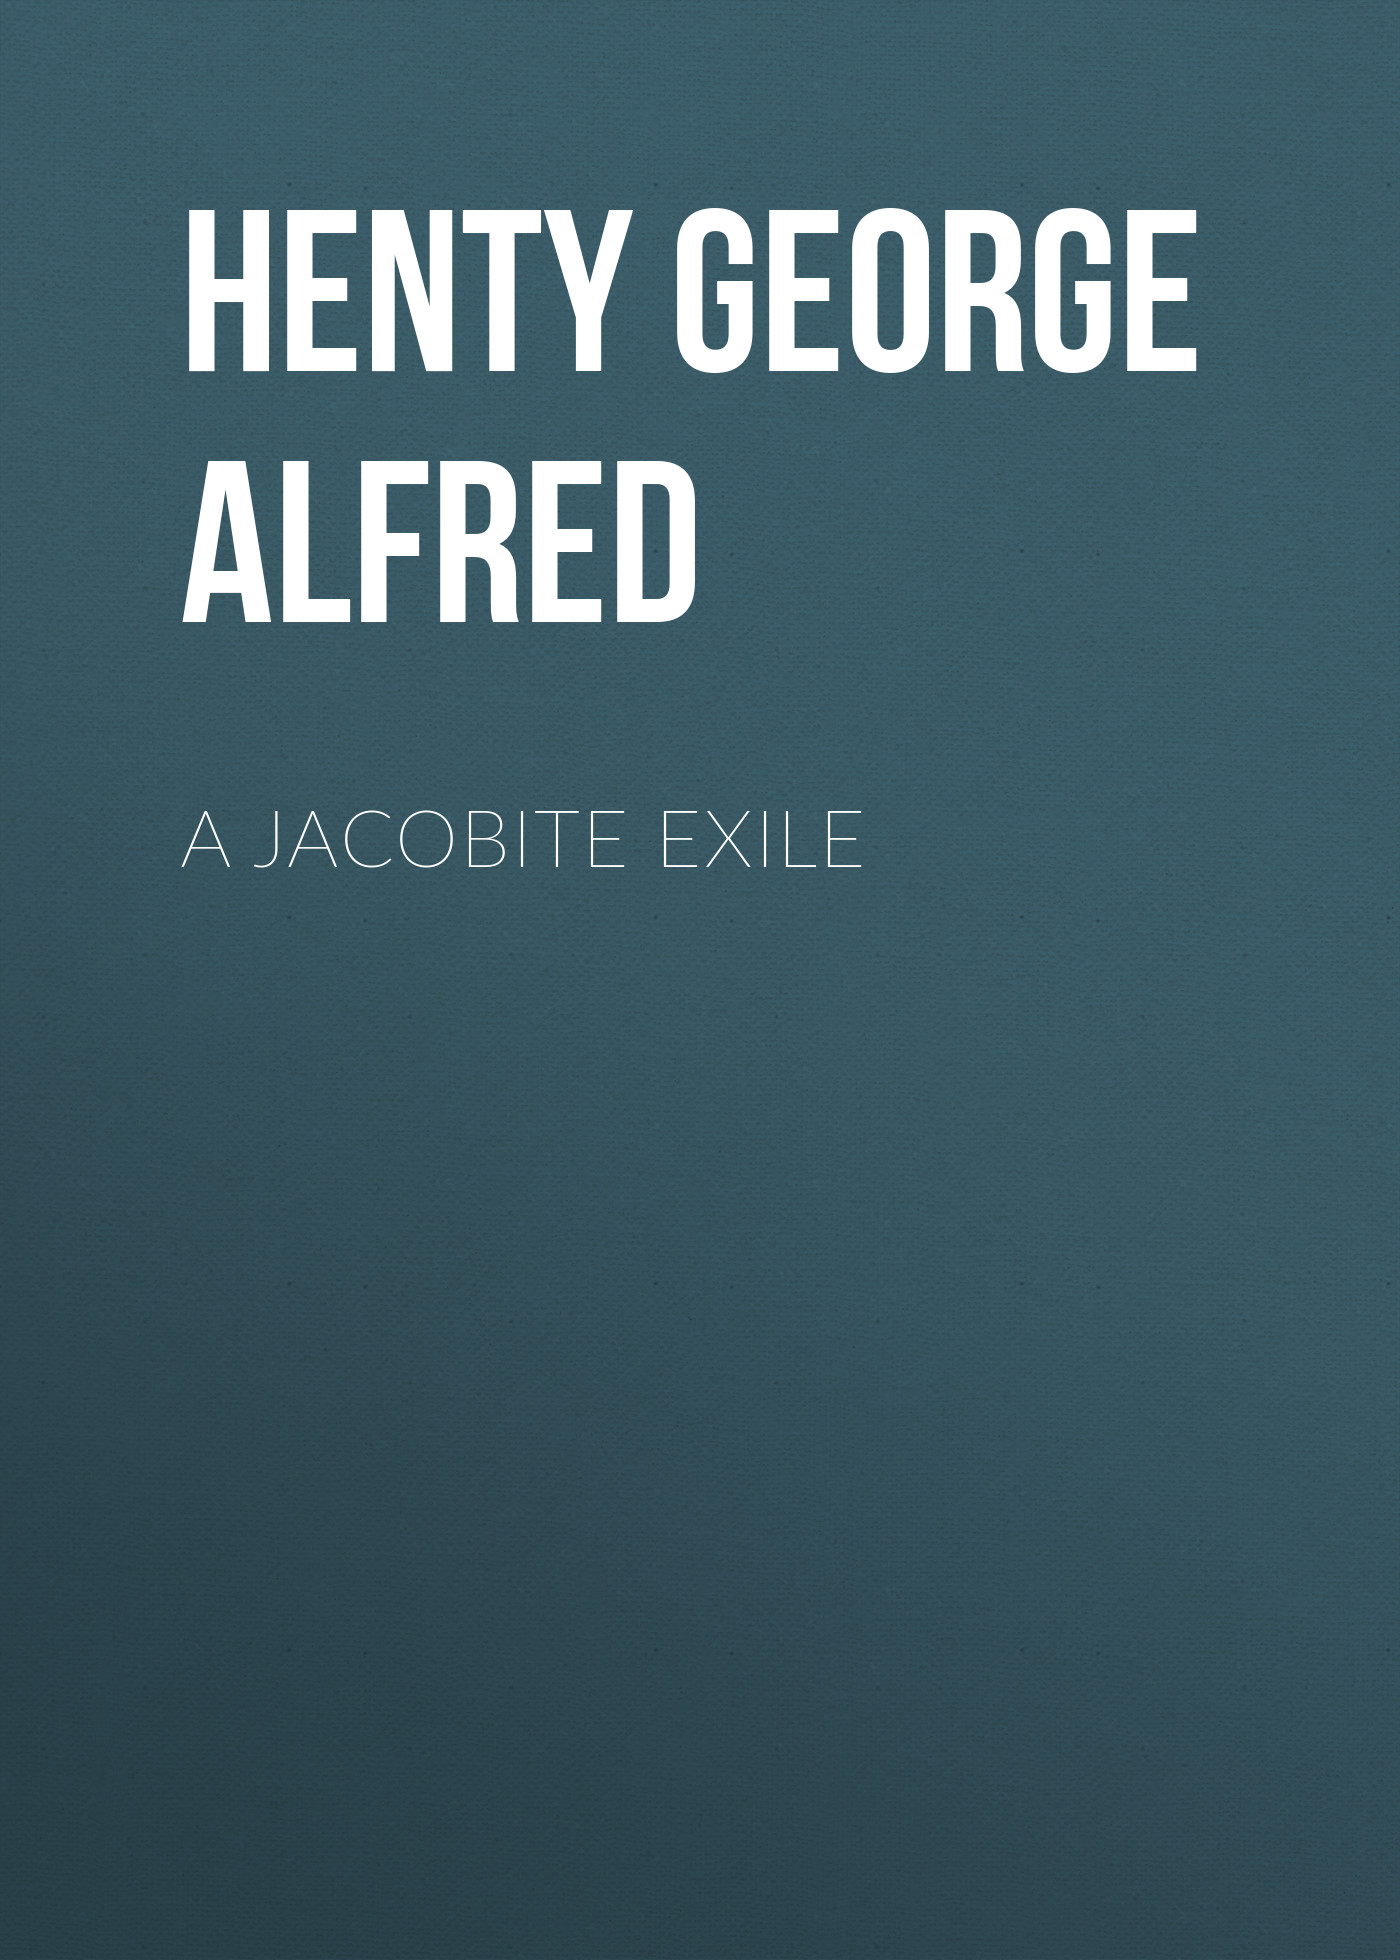 Книга A Jacobite Exile из серии , созданная George Henty, может относится к жанру Зарубежная классика, Зарубежная старинная литература. Стоимость электронной книги A Jacobite Exile с идентификатором 36323276 составляет 0 руб.